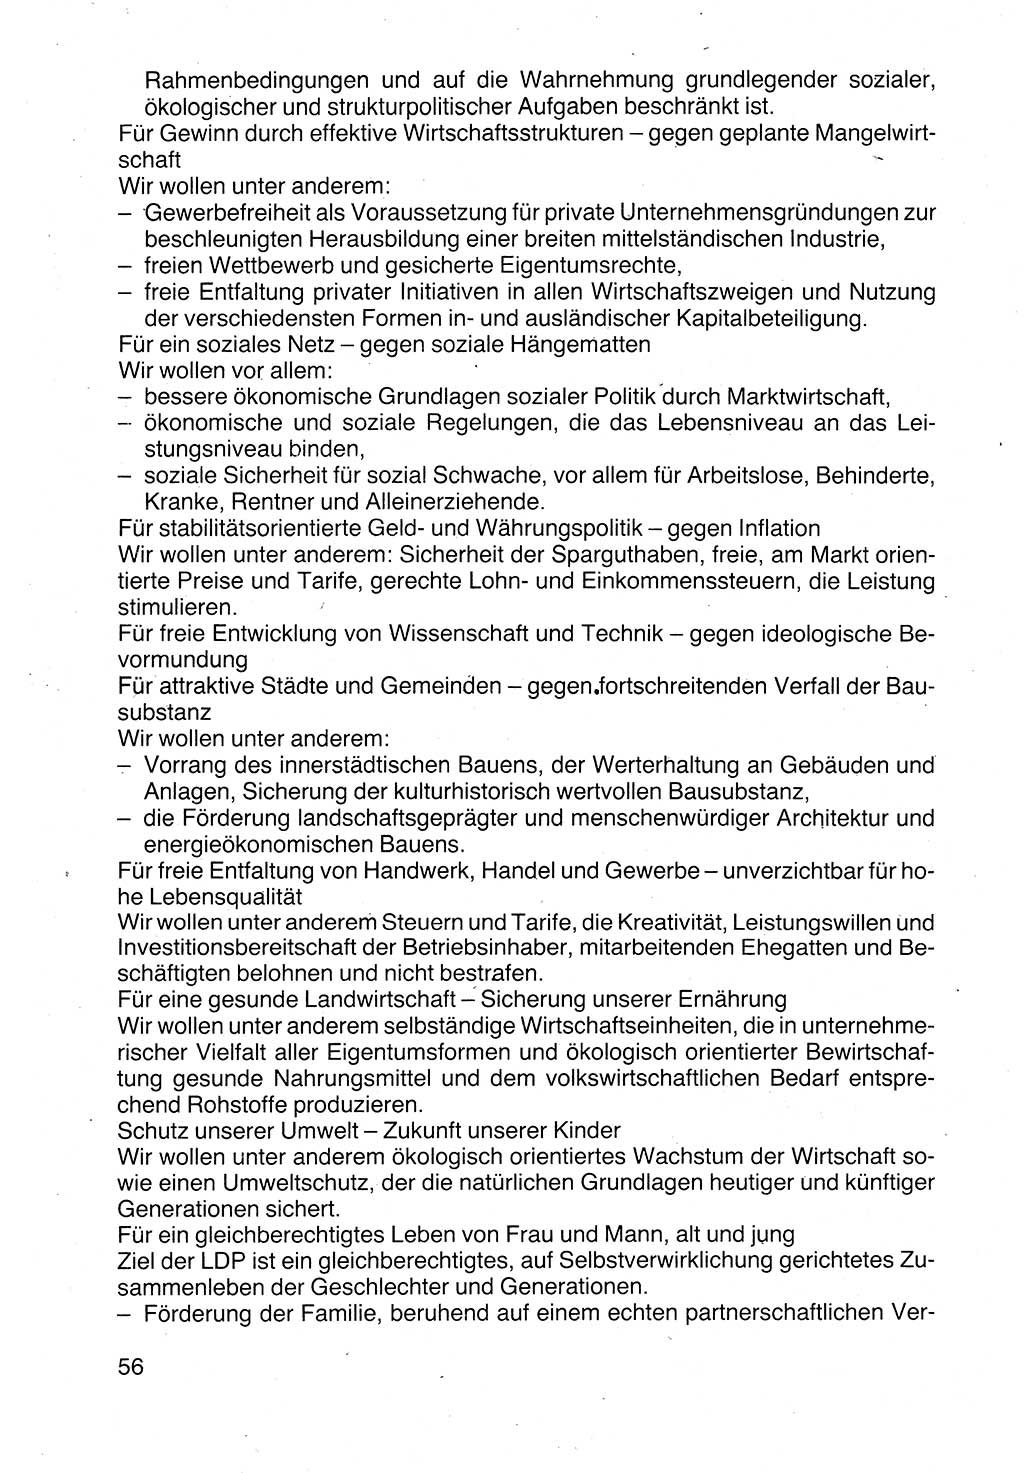 Politische Parteien und Bewegungen der DDR (Deutsche Demokratische Republik) über sich selbst 1990, Seite 56 (Pol. Part. Bew. DDR 1990, S. 56)